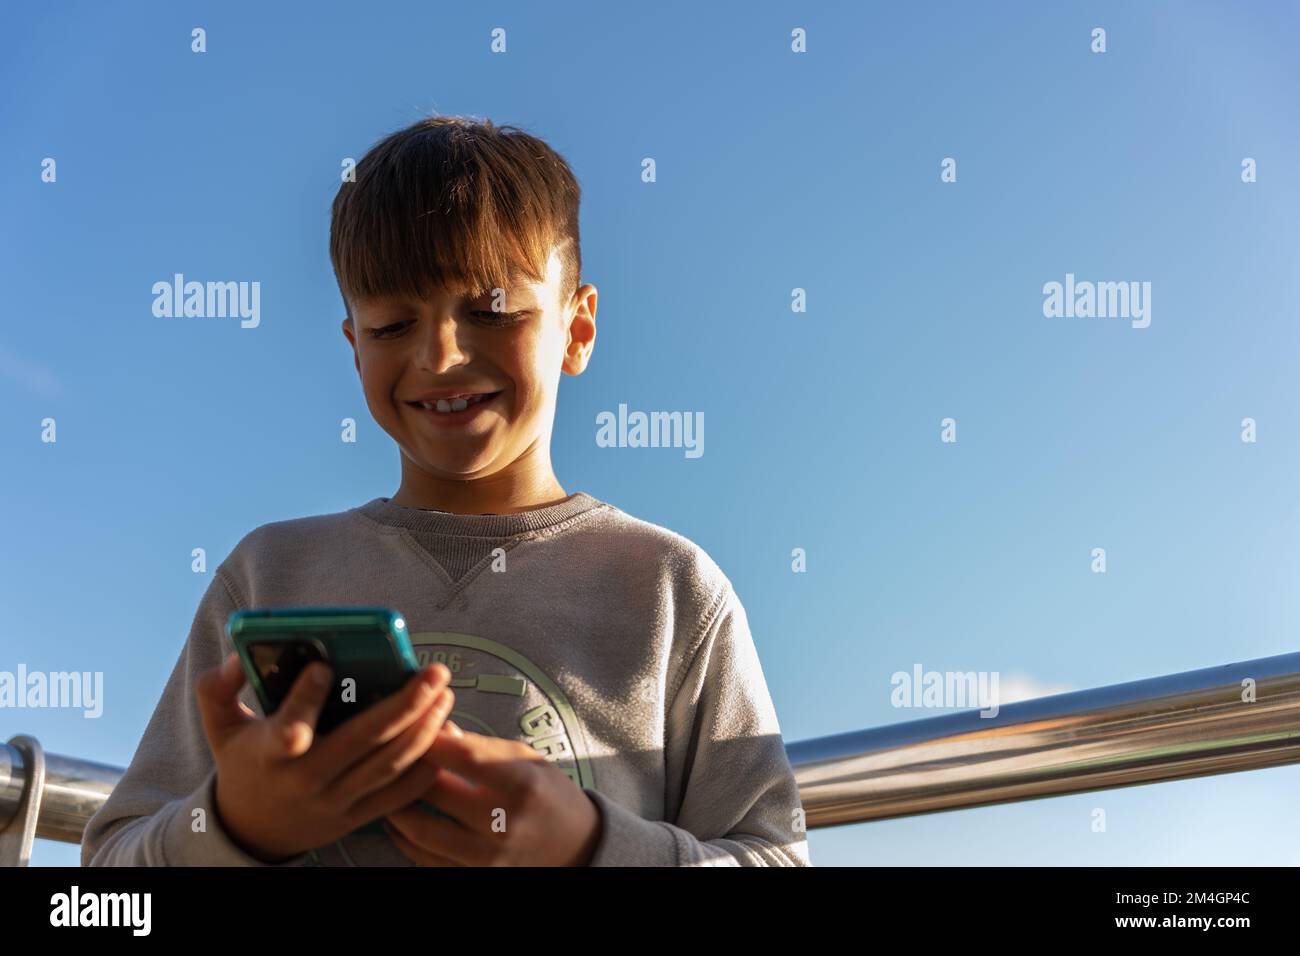 Von unten fröhlicher Junge in legerer Kleidung, der lächelt und Videos auf dem Handy ansieht, während er Zeit auf der Terrasse vor dem wolkenlosen blauen Himmel verbringt Stockfoto